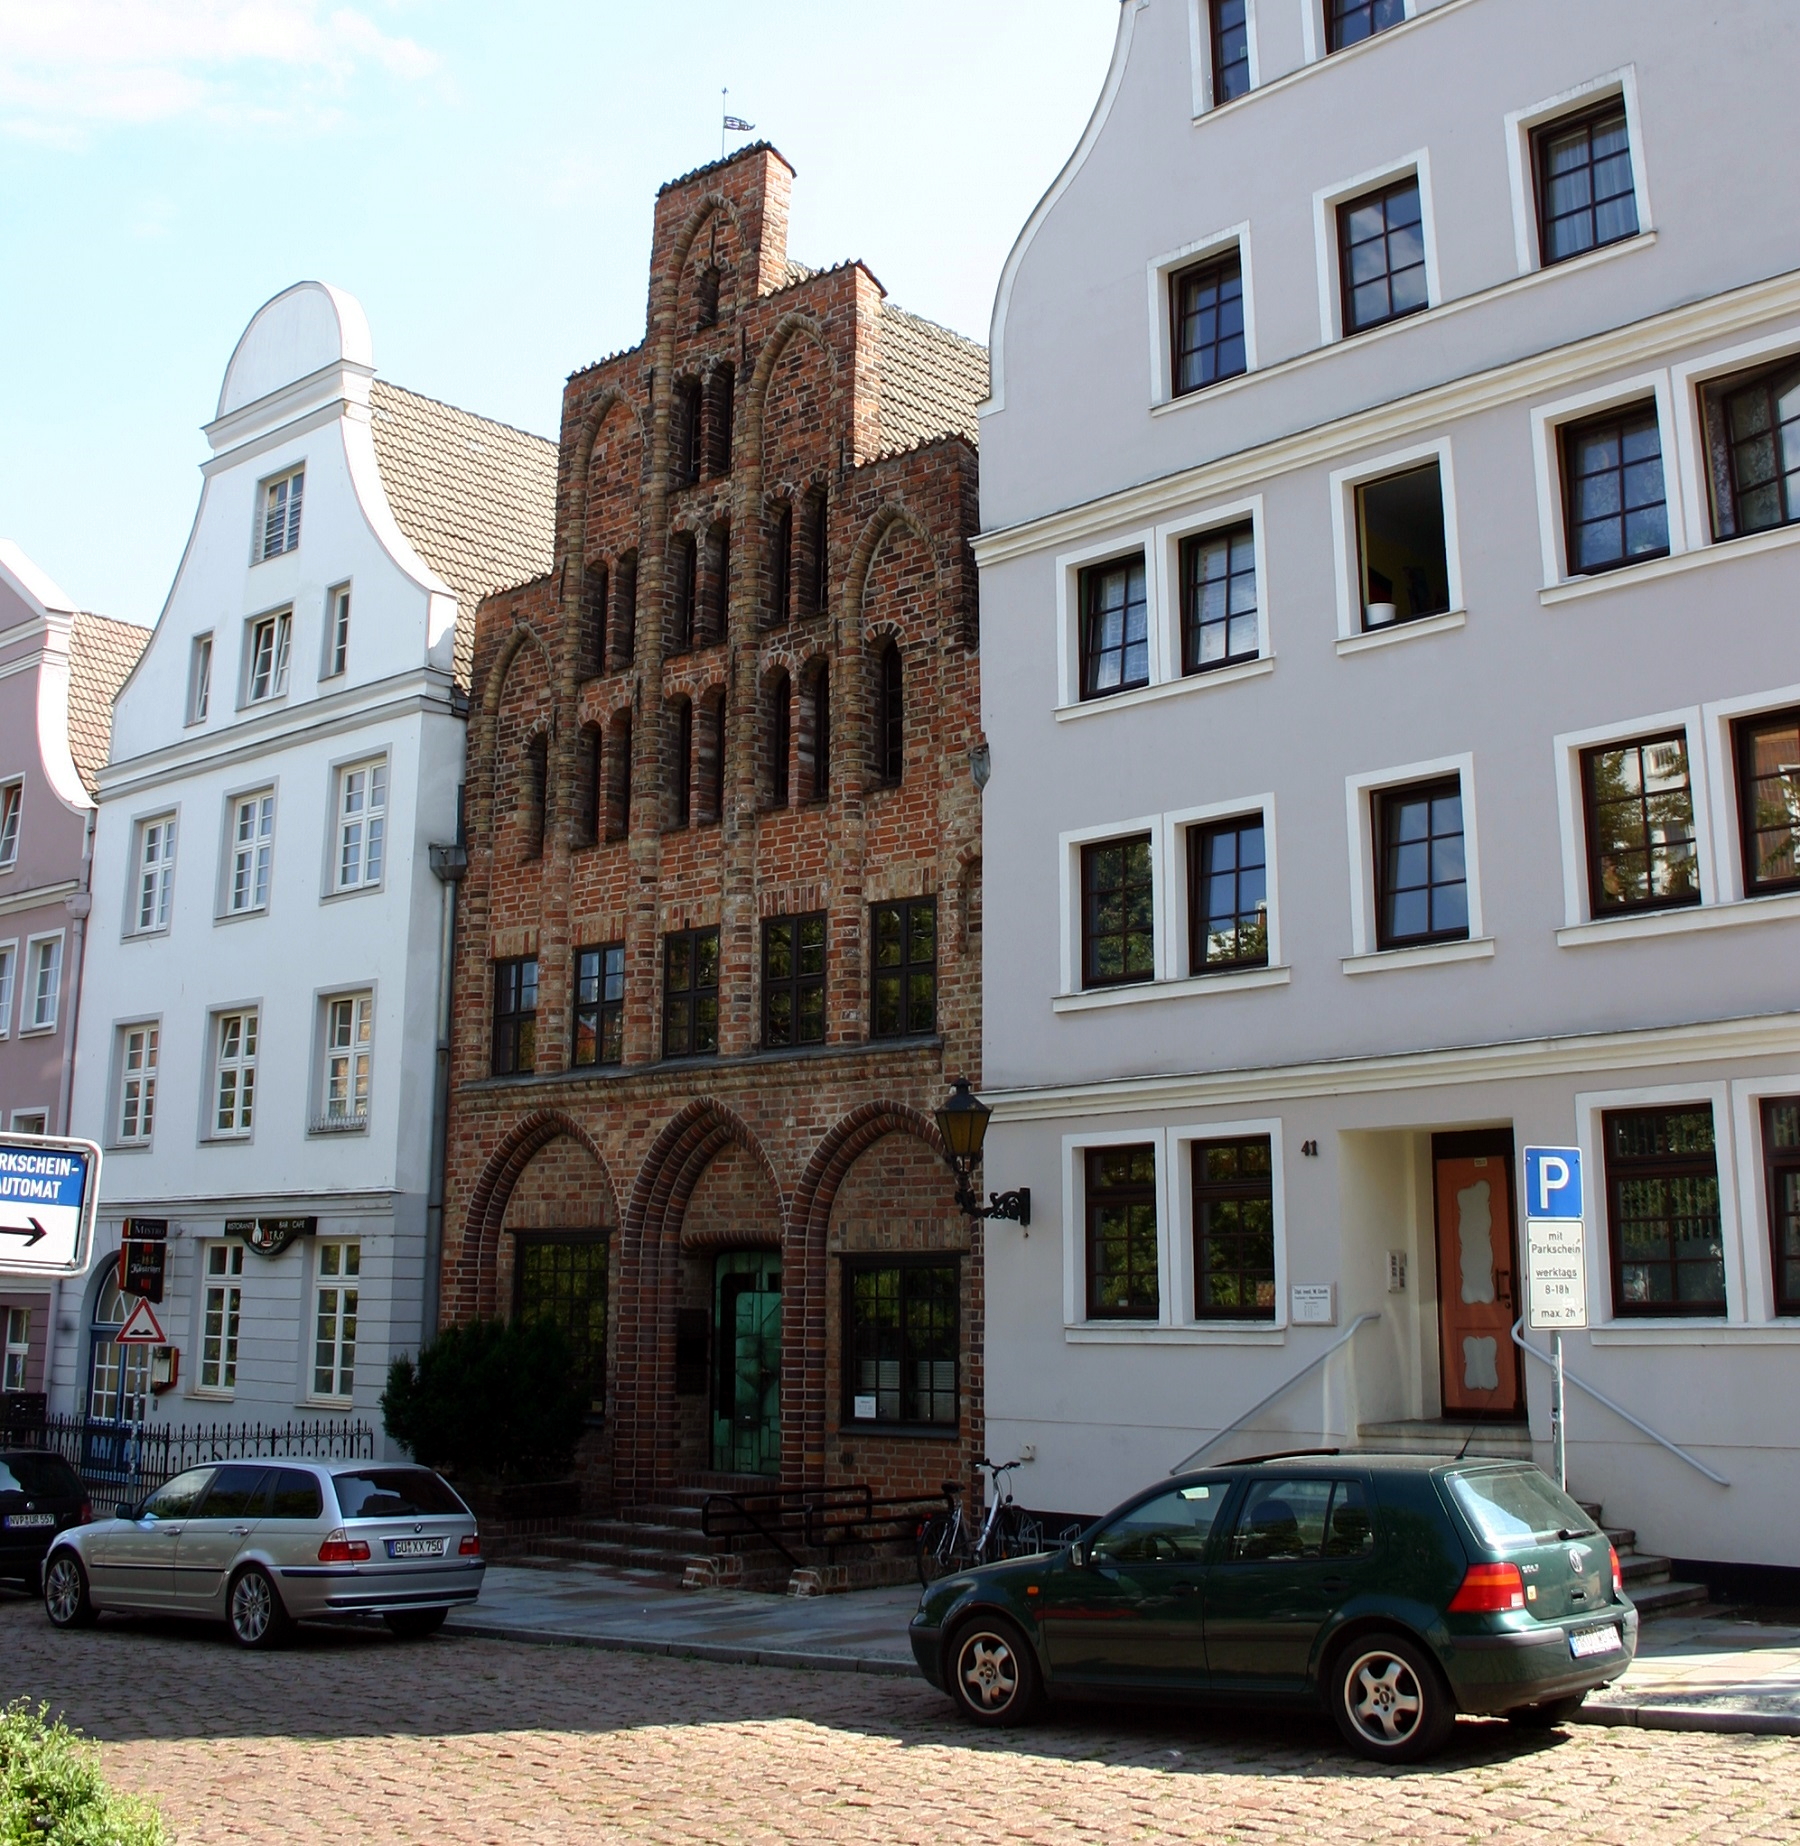 Hausbaumhaus, Rostock